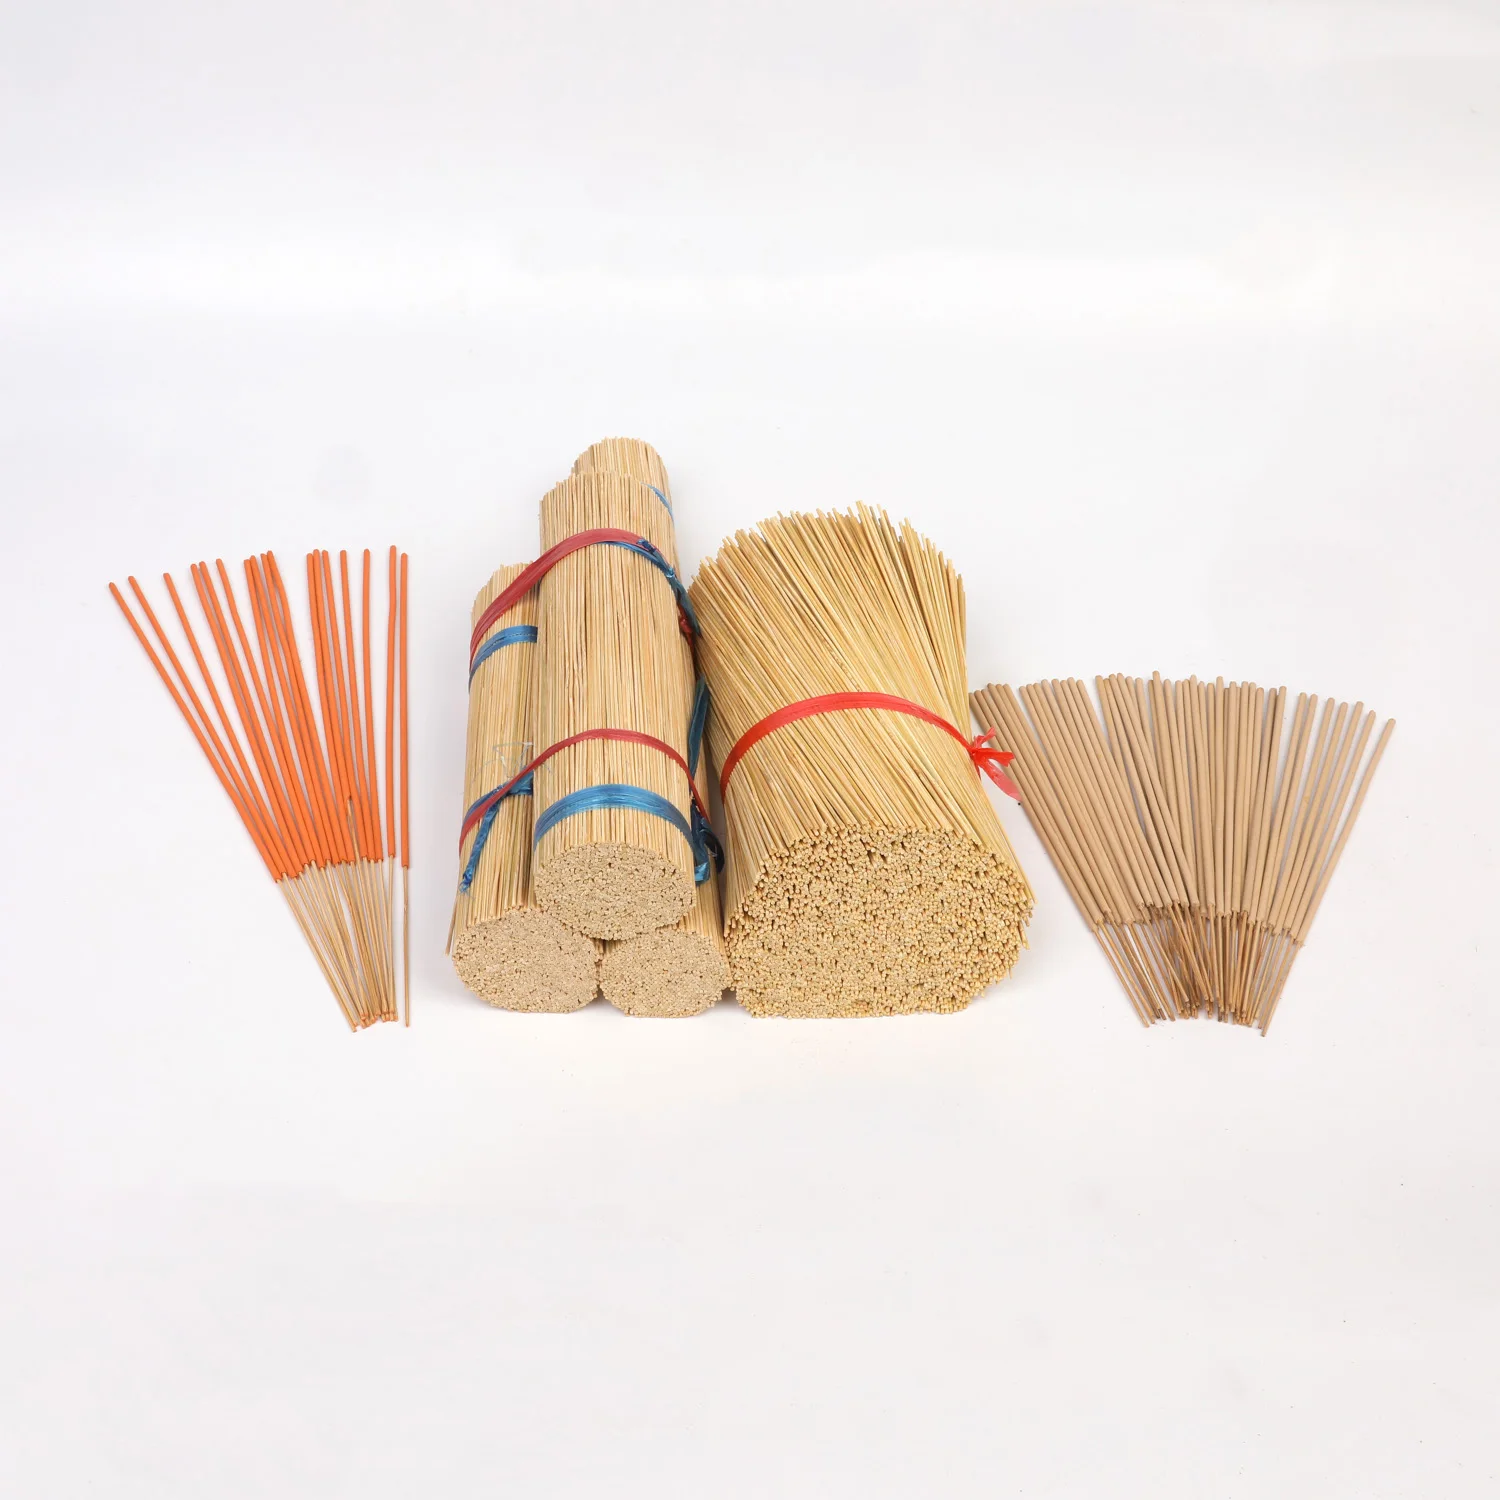 Оптовая продажа от производителя, бамбуковая палочка лучшего качества для приготовления благовоний